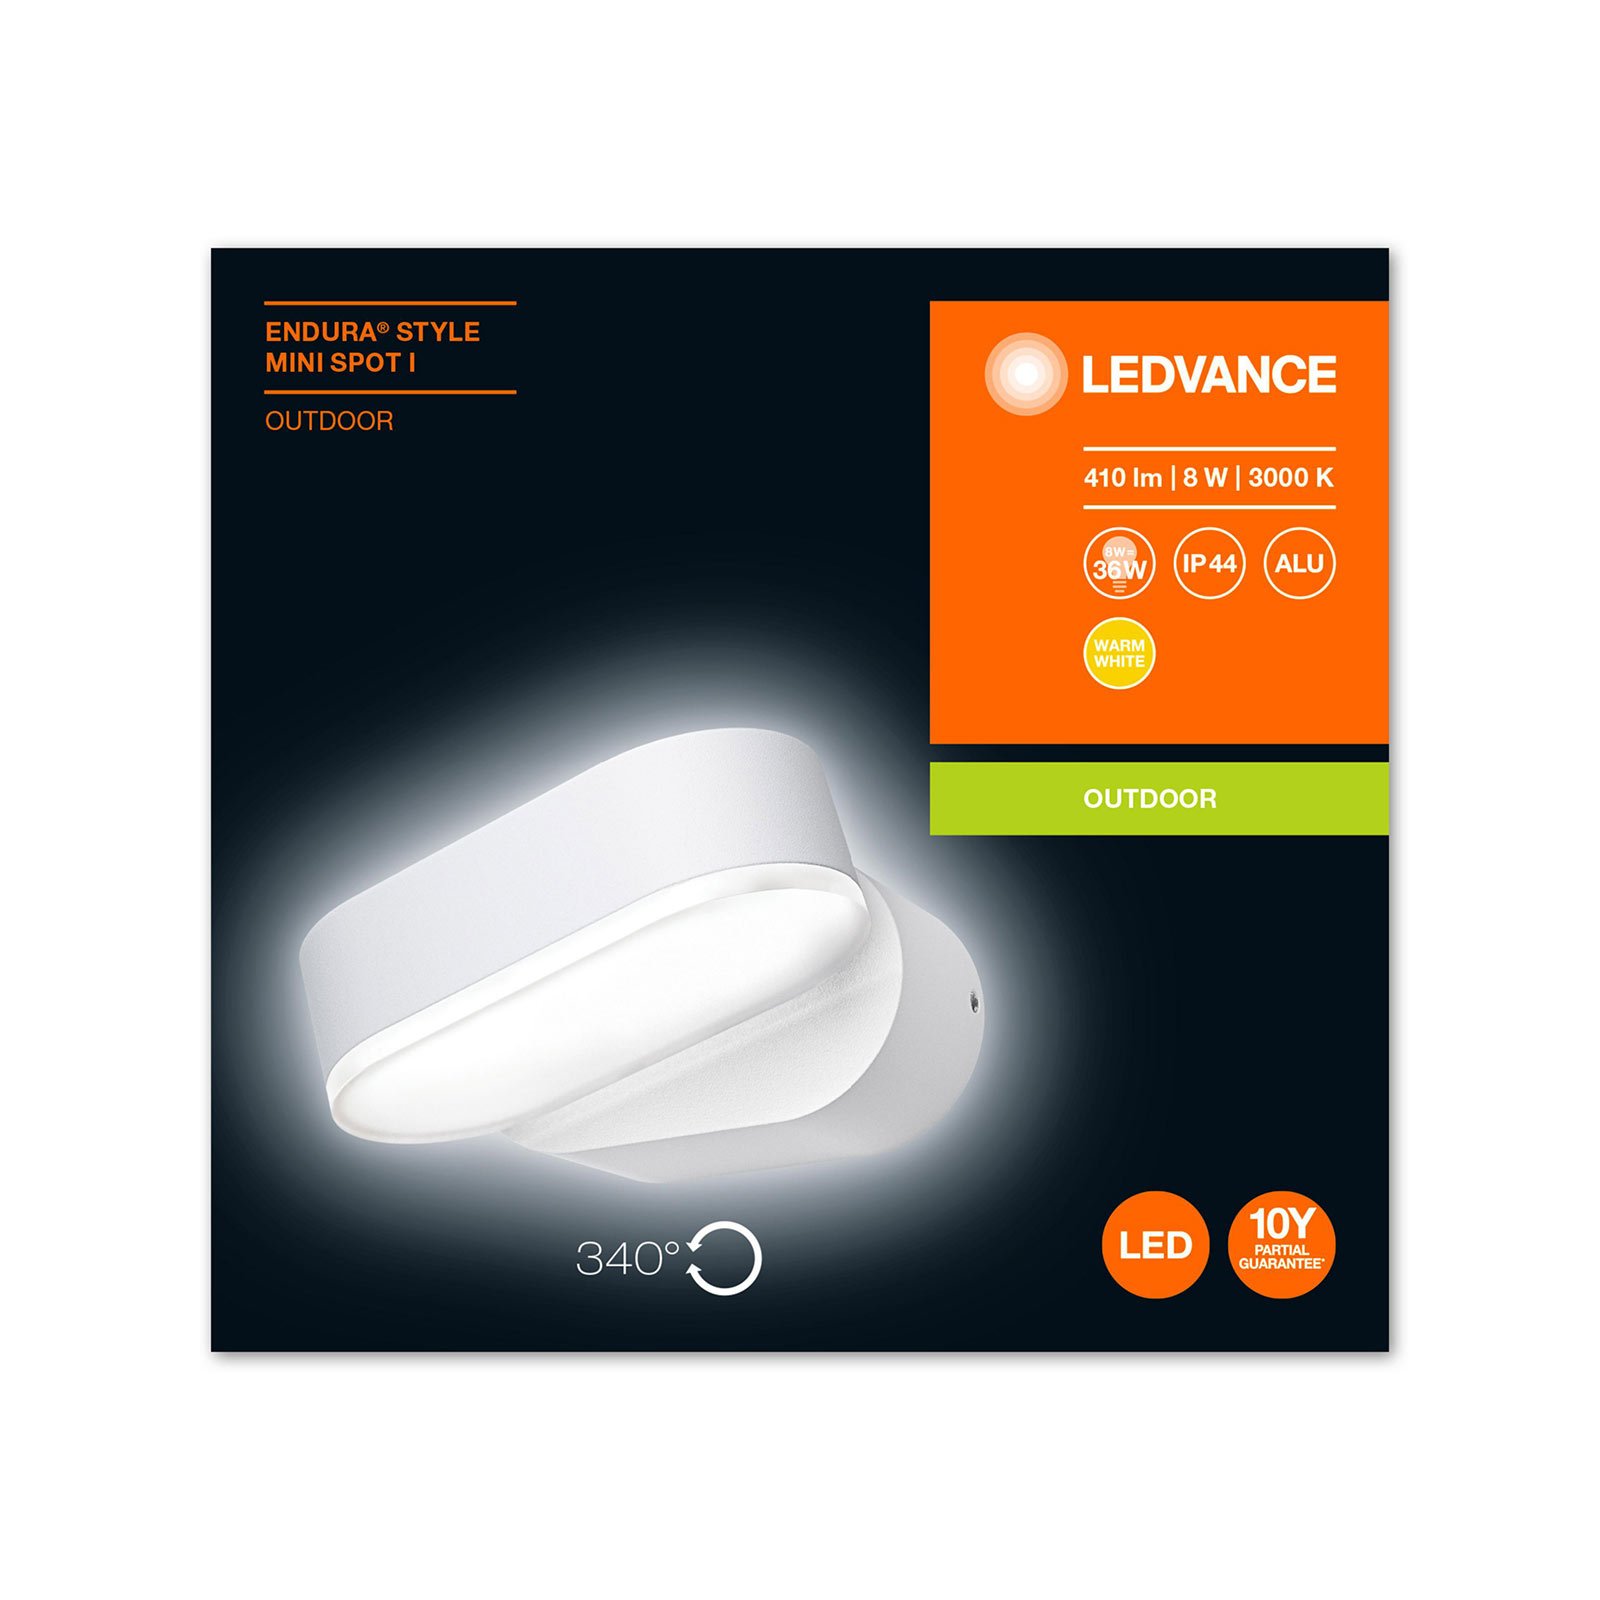 LEDVANCE Endura Style Mini Spot I LED blanc